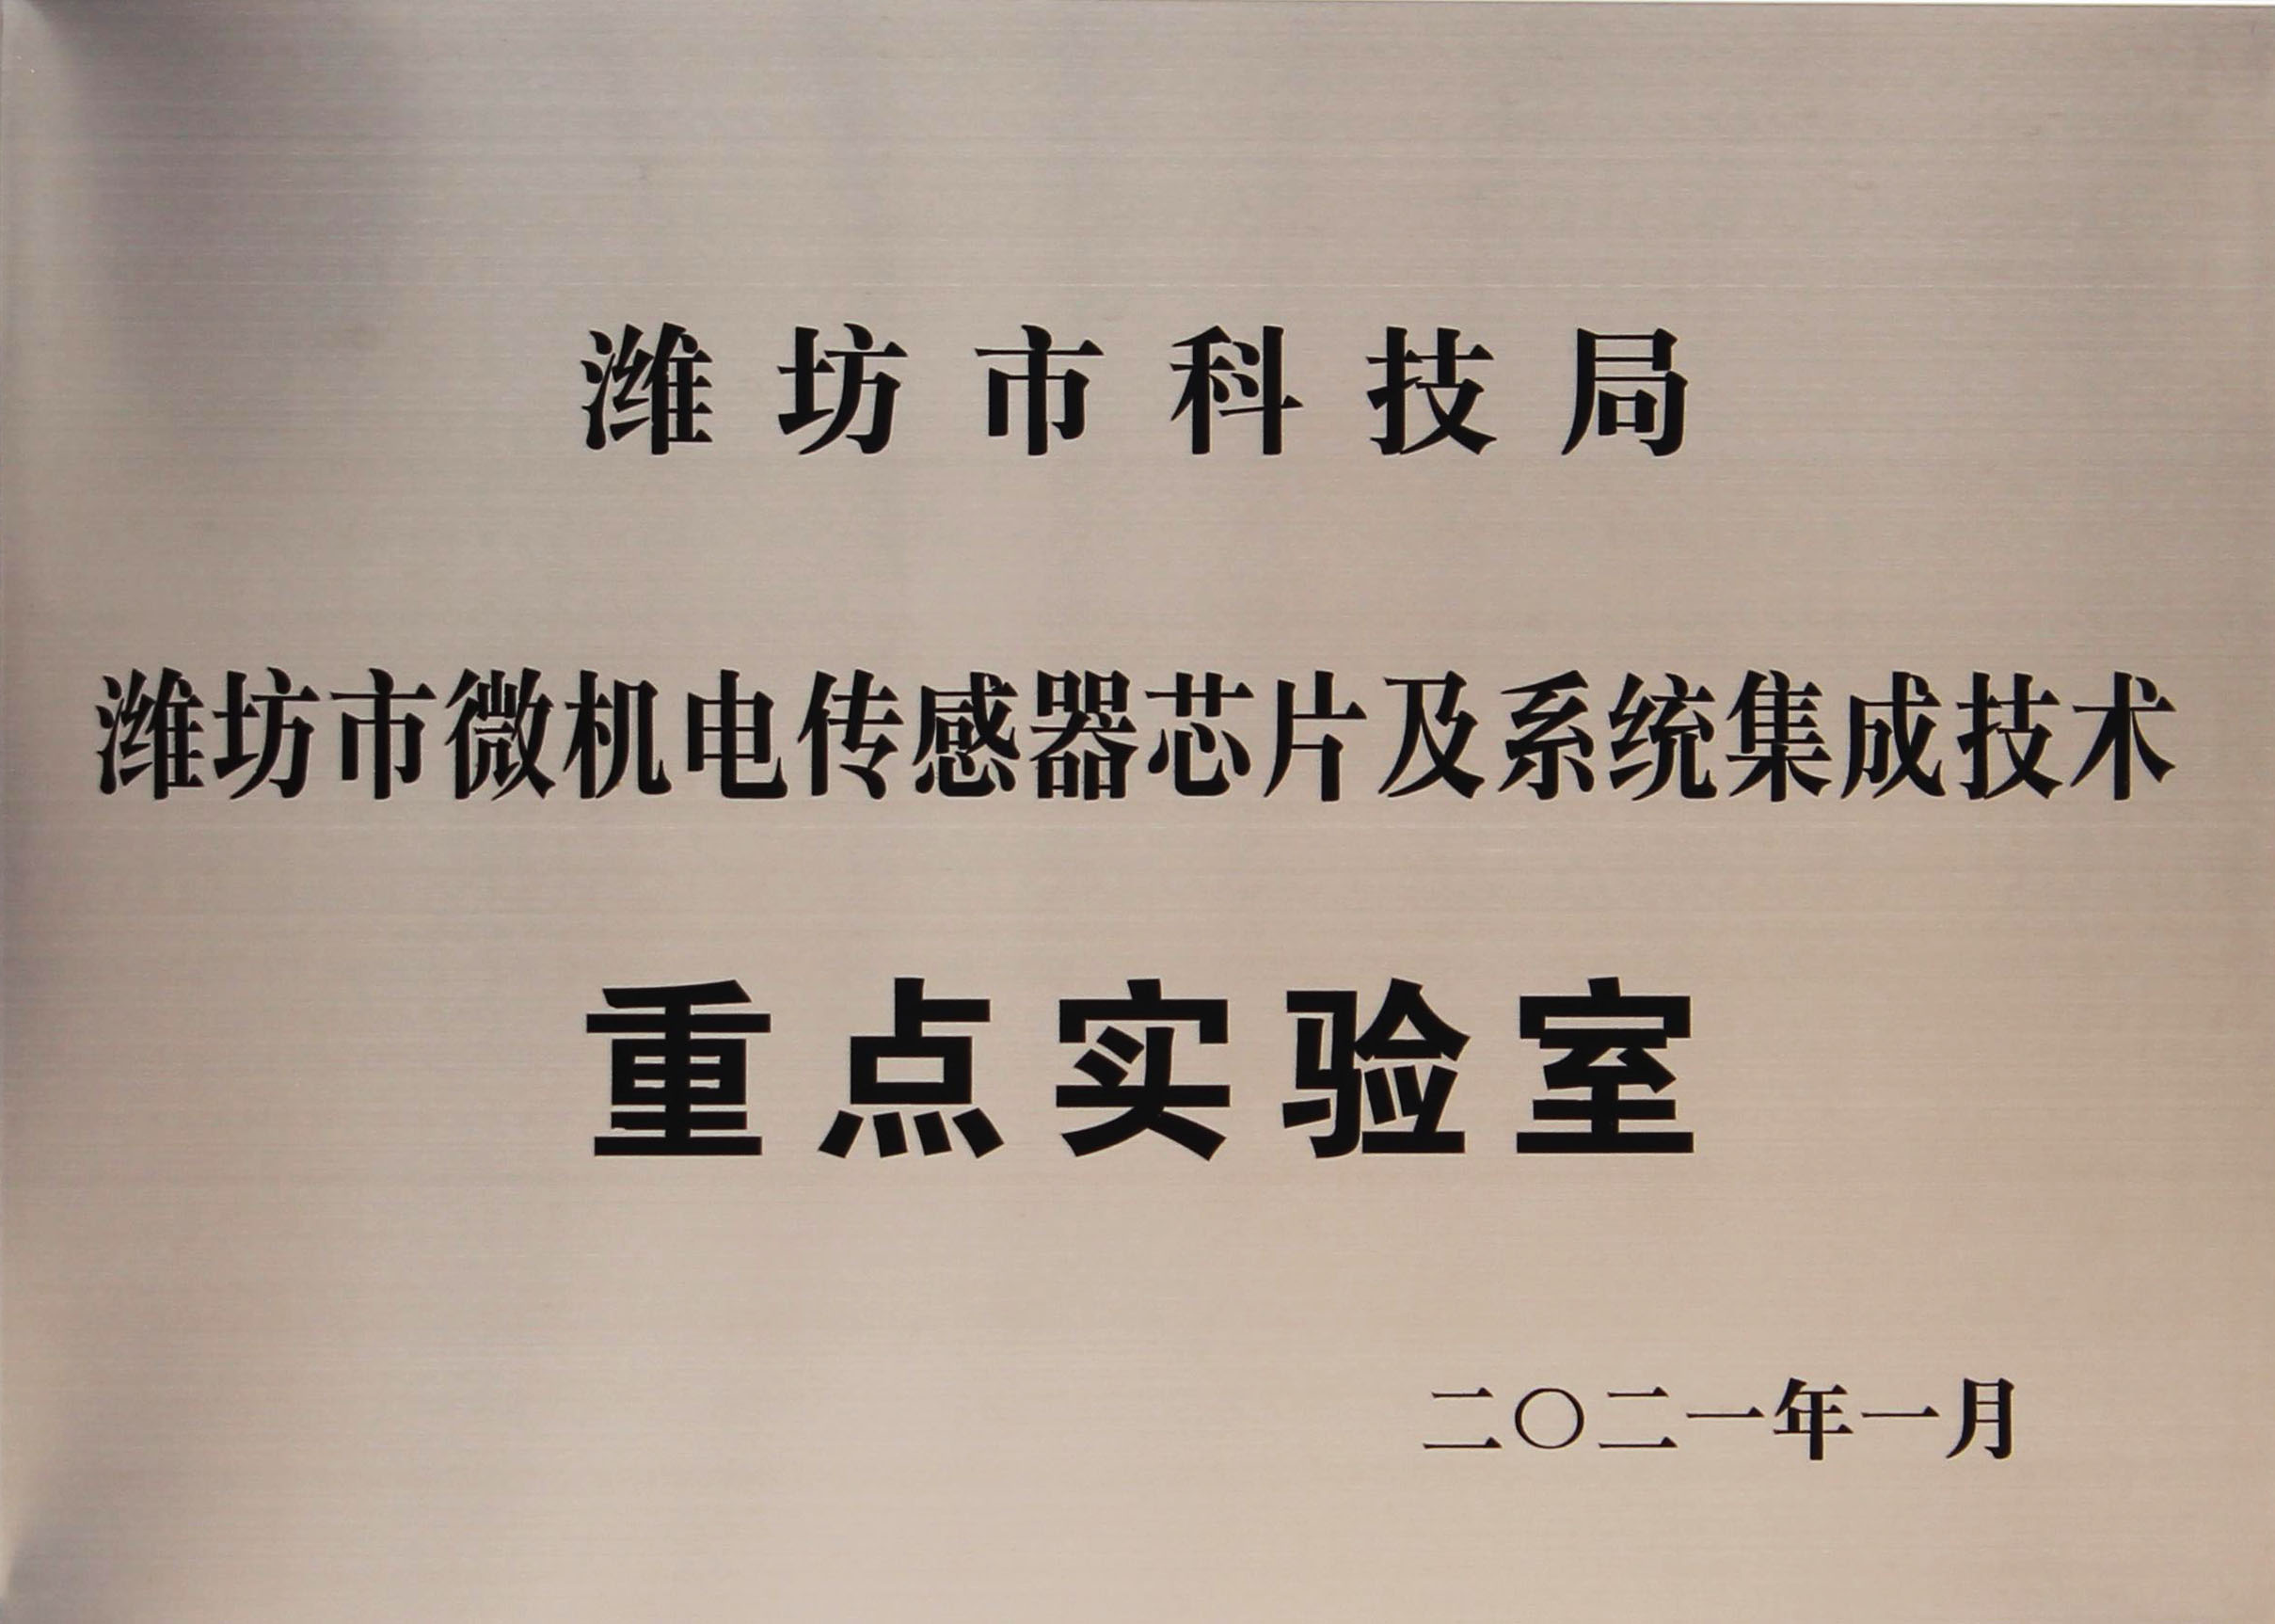 Xingang Electronics was granted weifang key laboratory honor